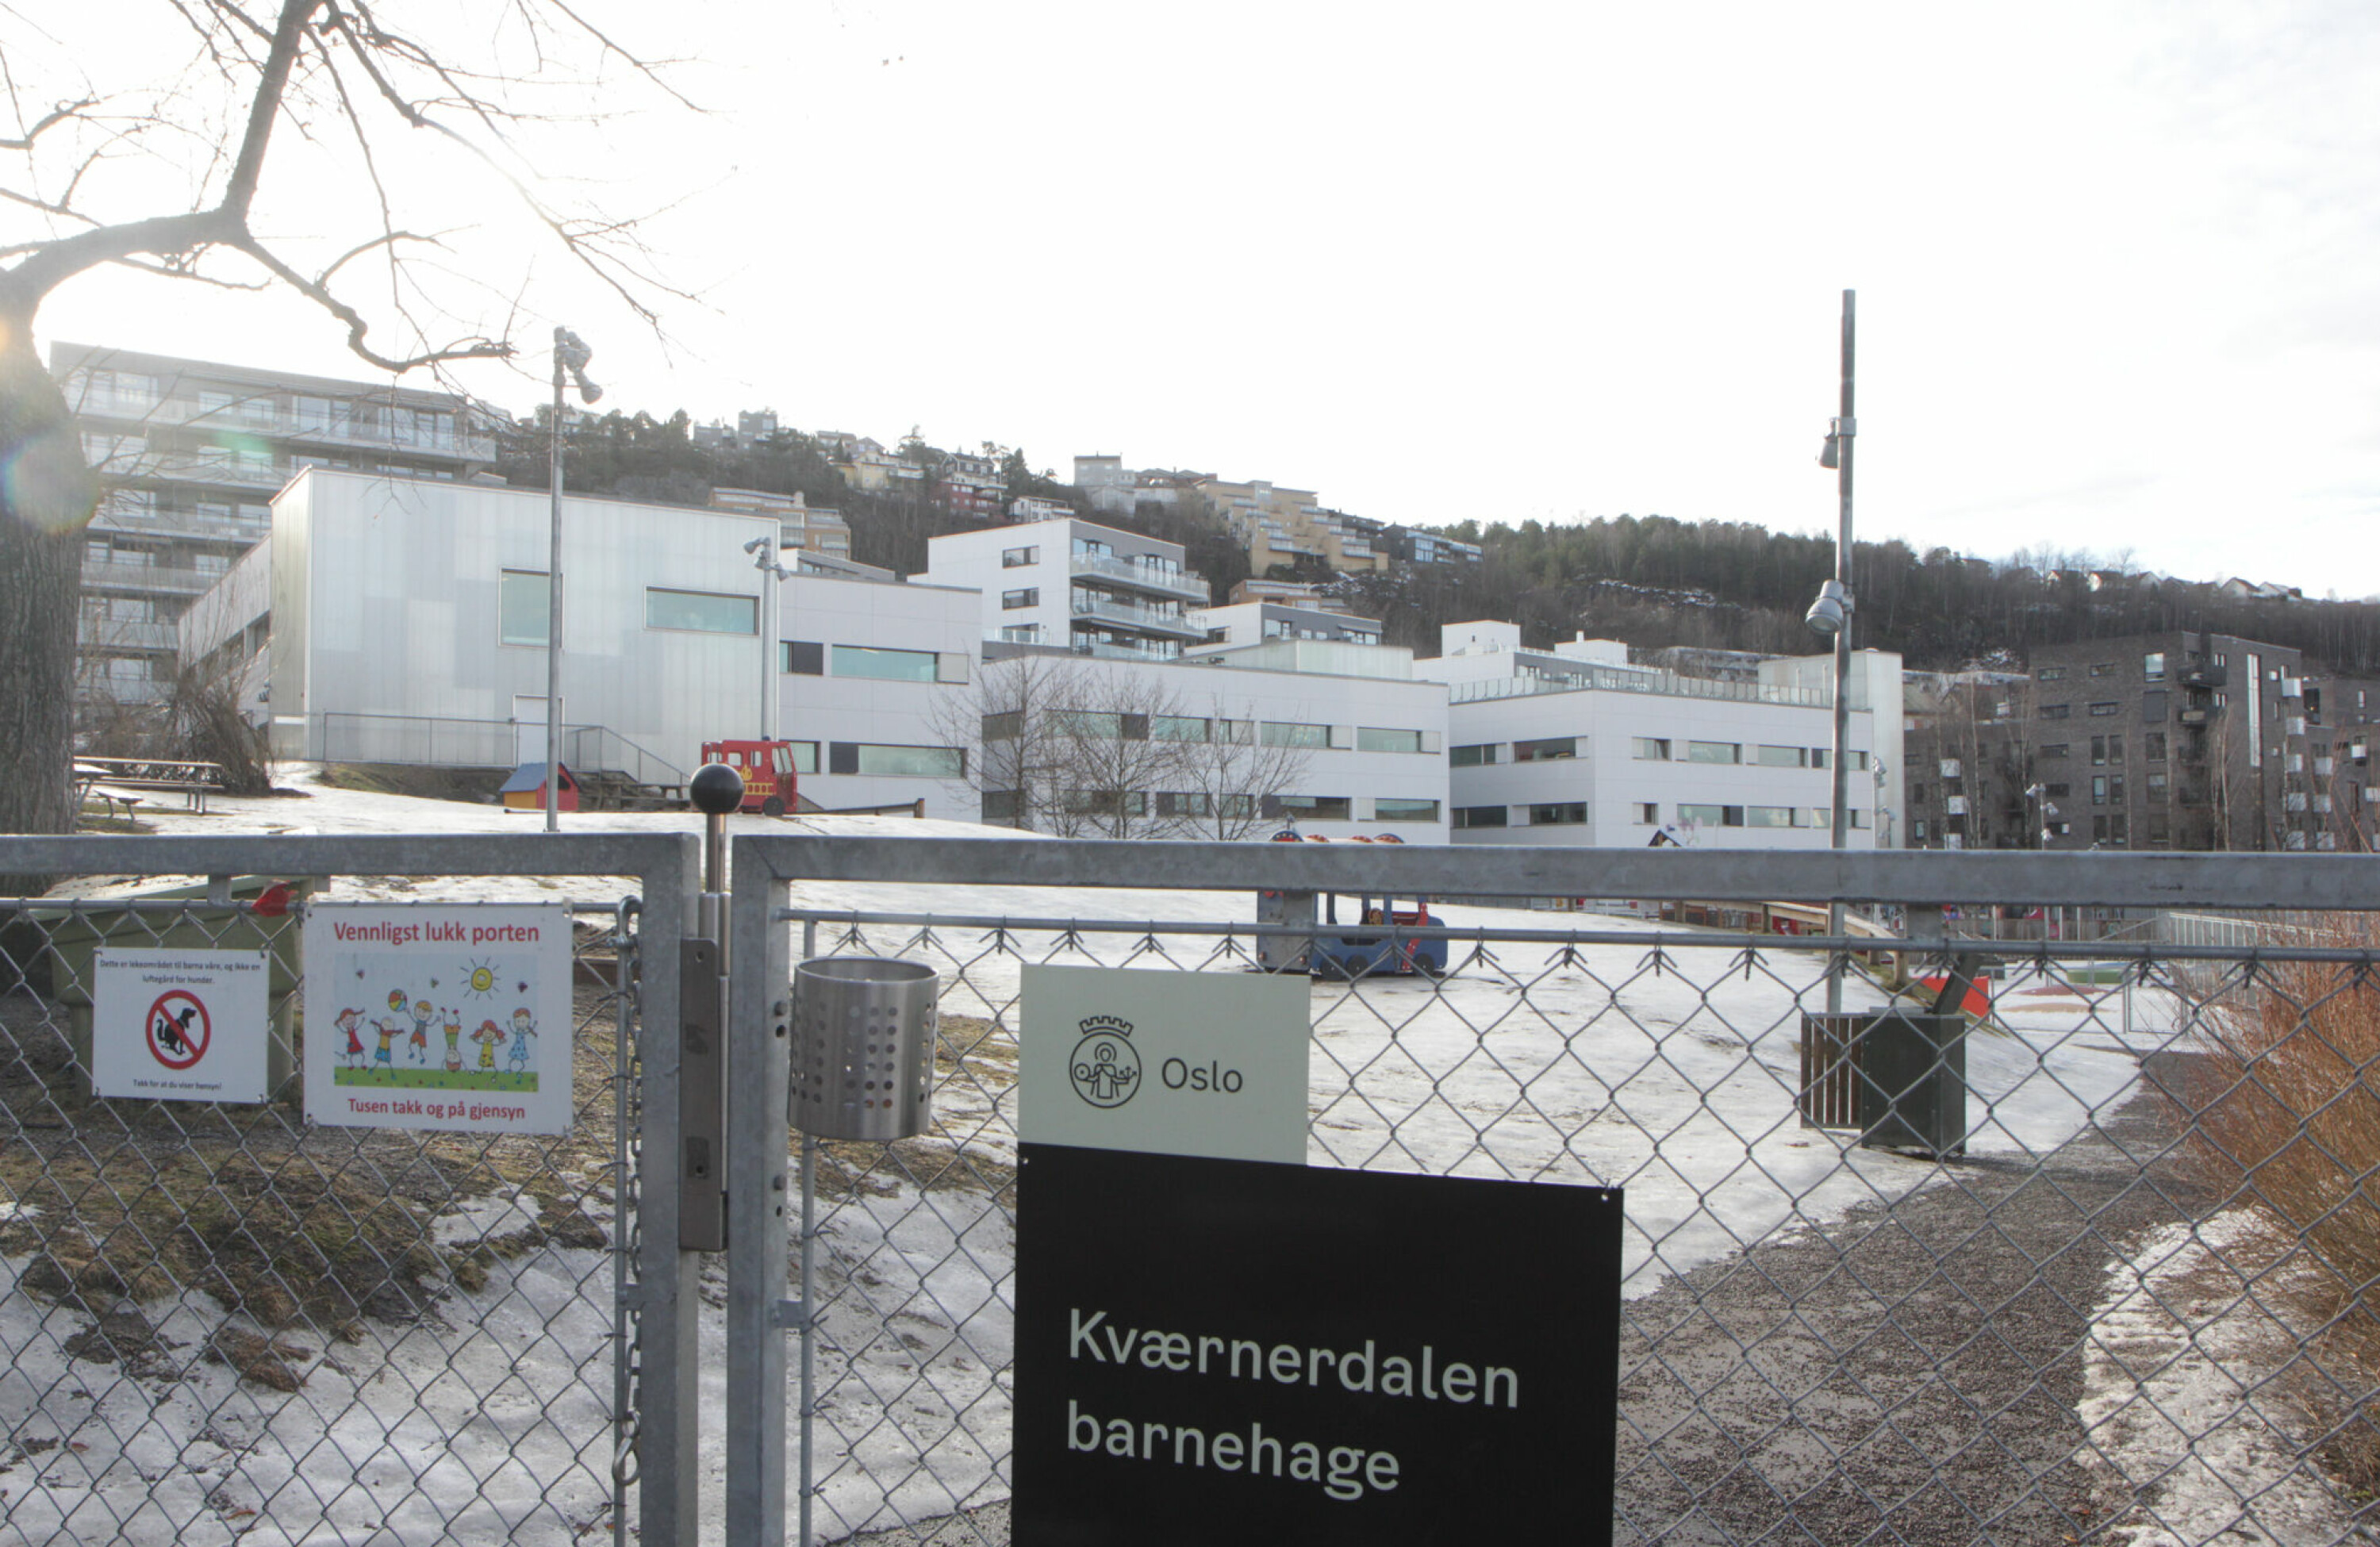 Kværnerdalen barnehage i bydel Gamle Oslo er blant landets største, og har nå plass til cirka 320 barn.